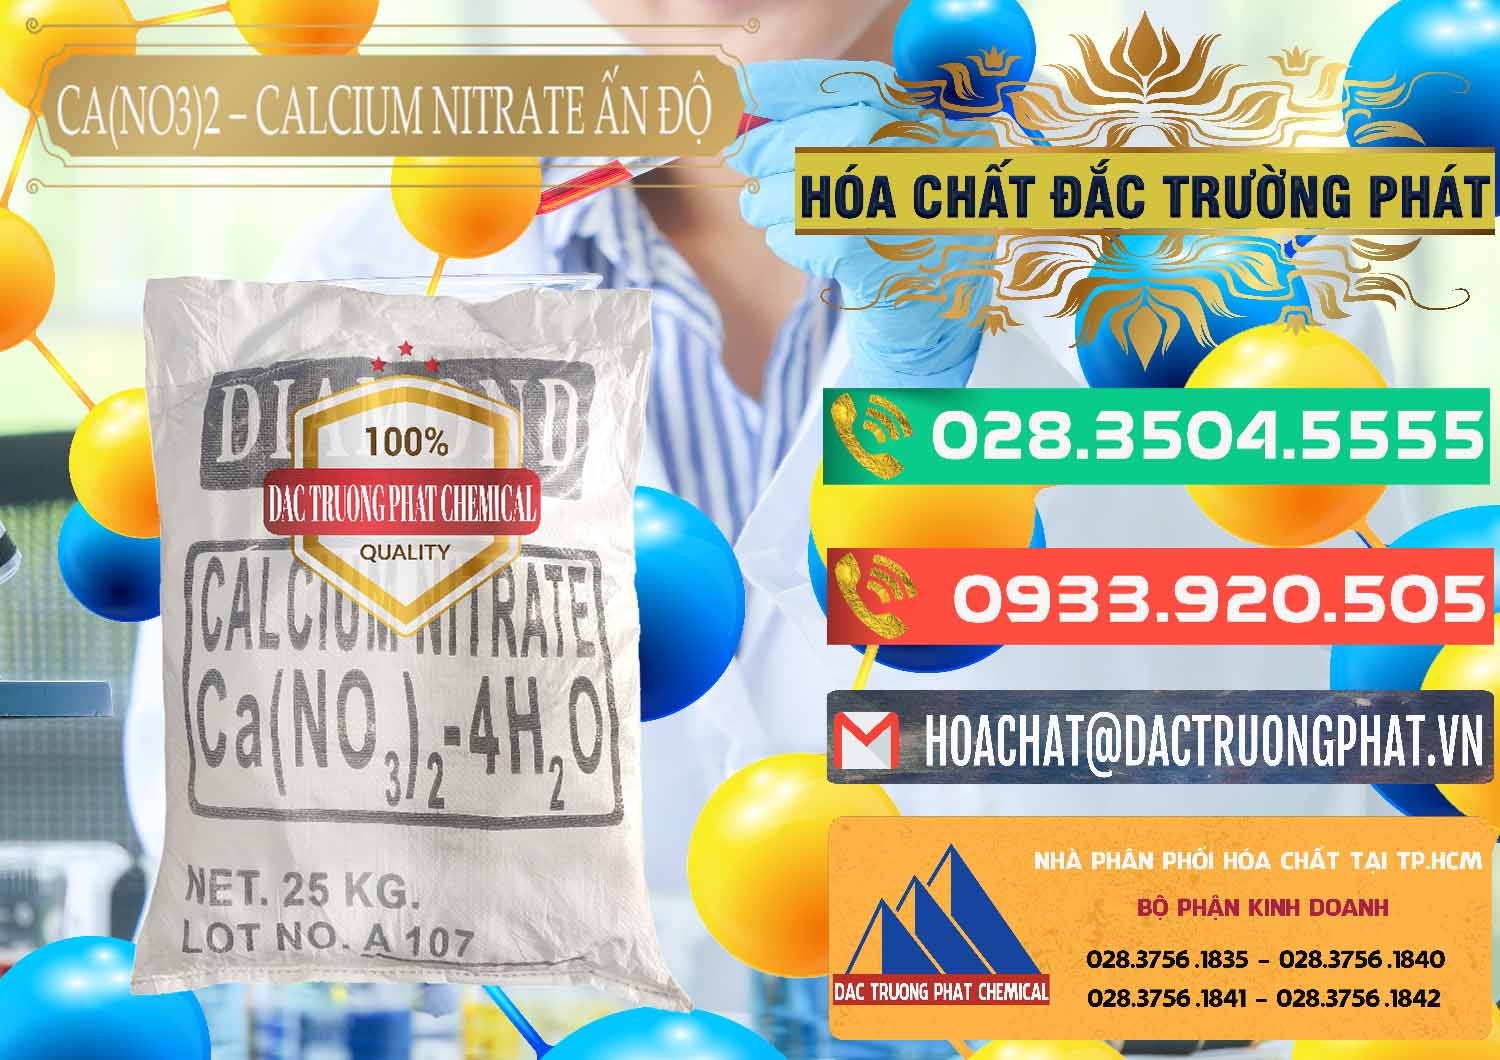 Công ty chuyên bán và cung cấp CA(NO3)2 – Calcium Nitrate Ấn Độ India - 0038 - Cty chuyên cung cấp & kinh doanh hóa chất tại TP.HCM - congtyhoachat.com.vn